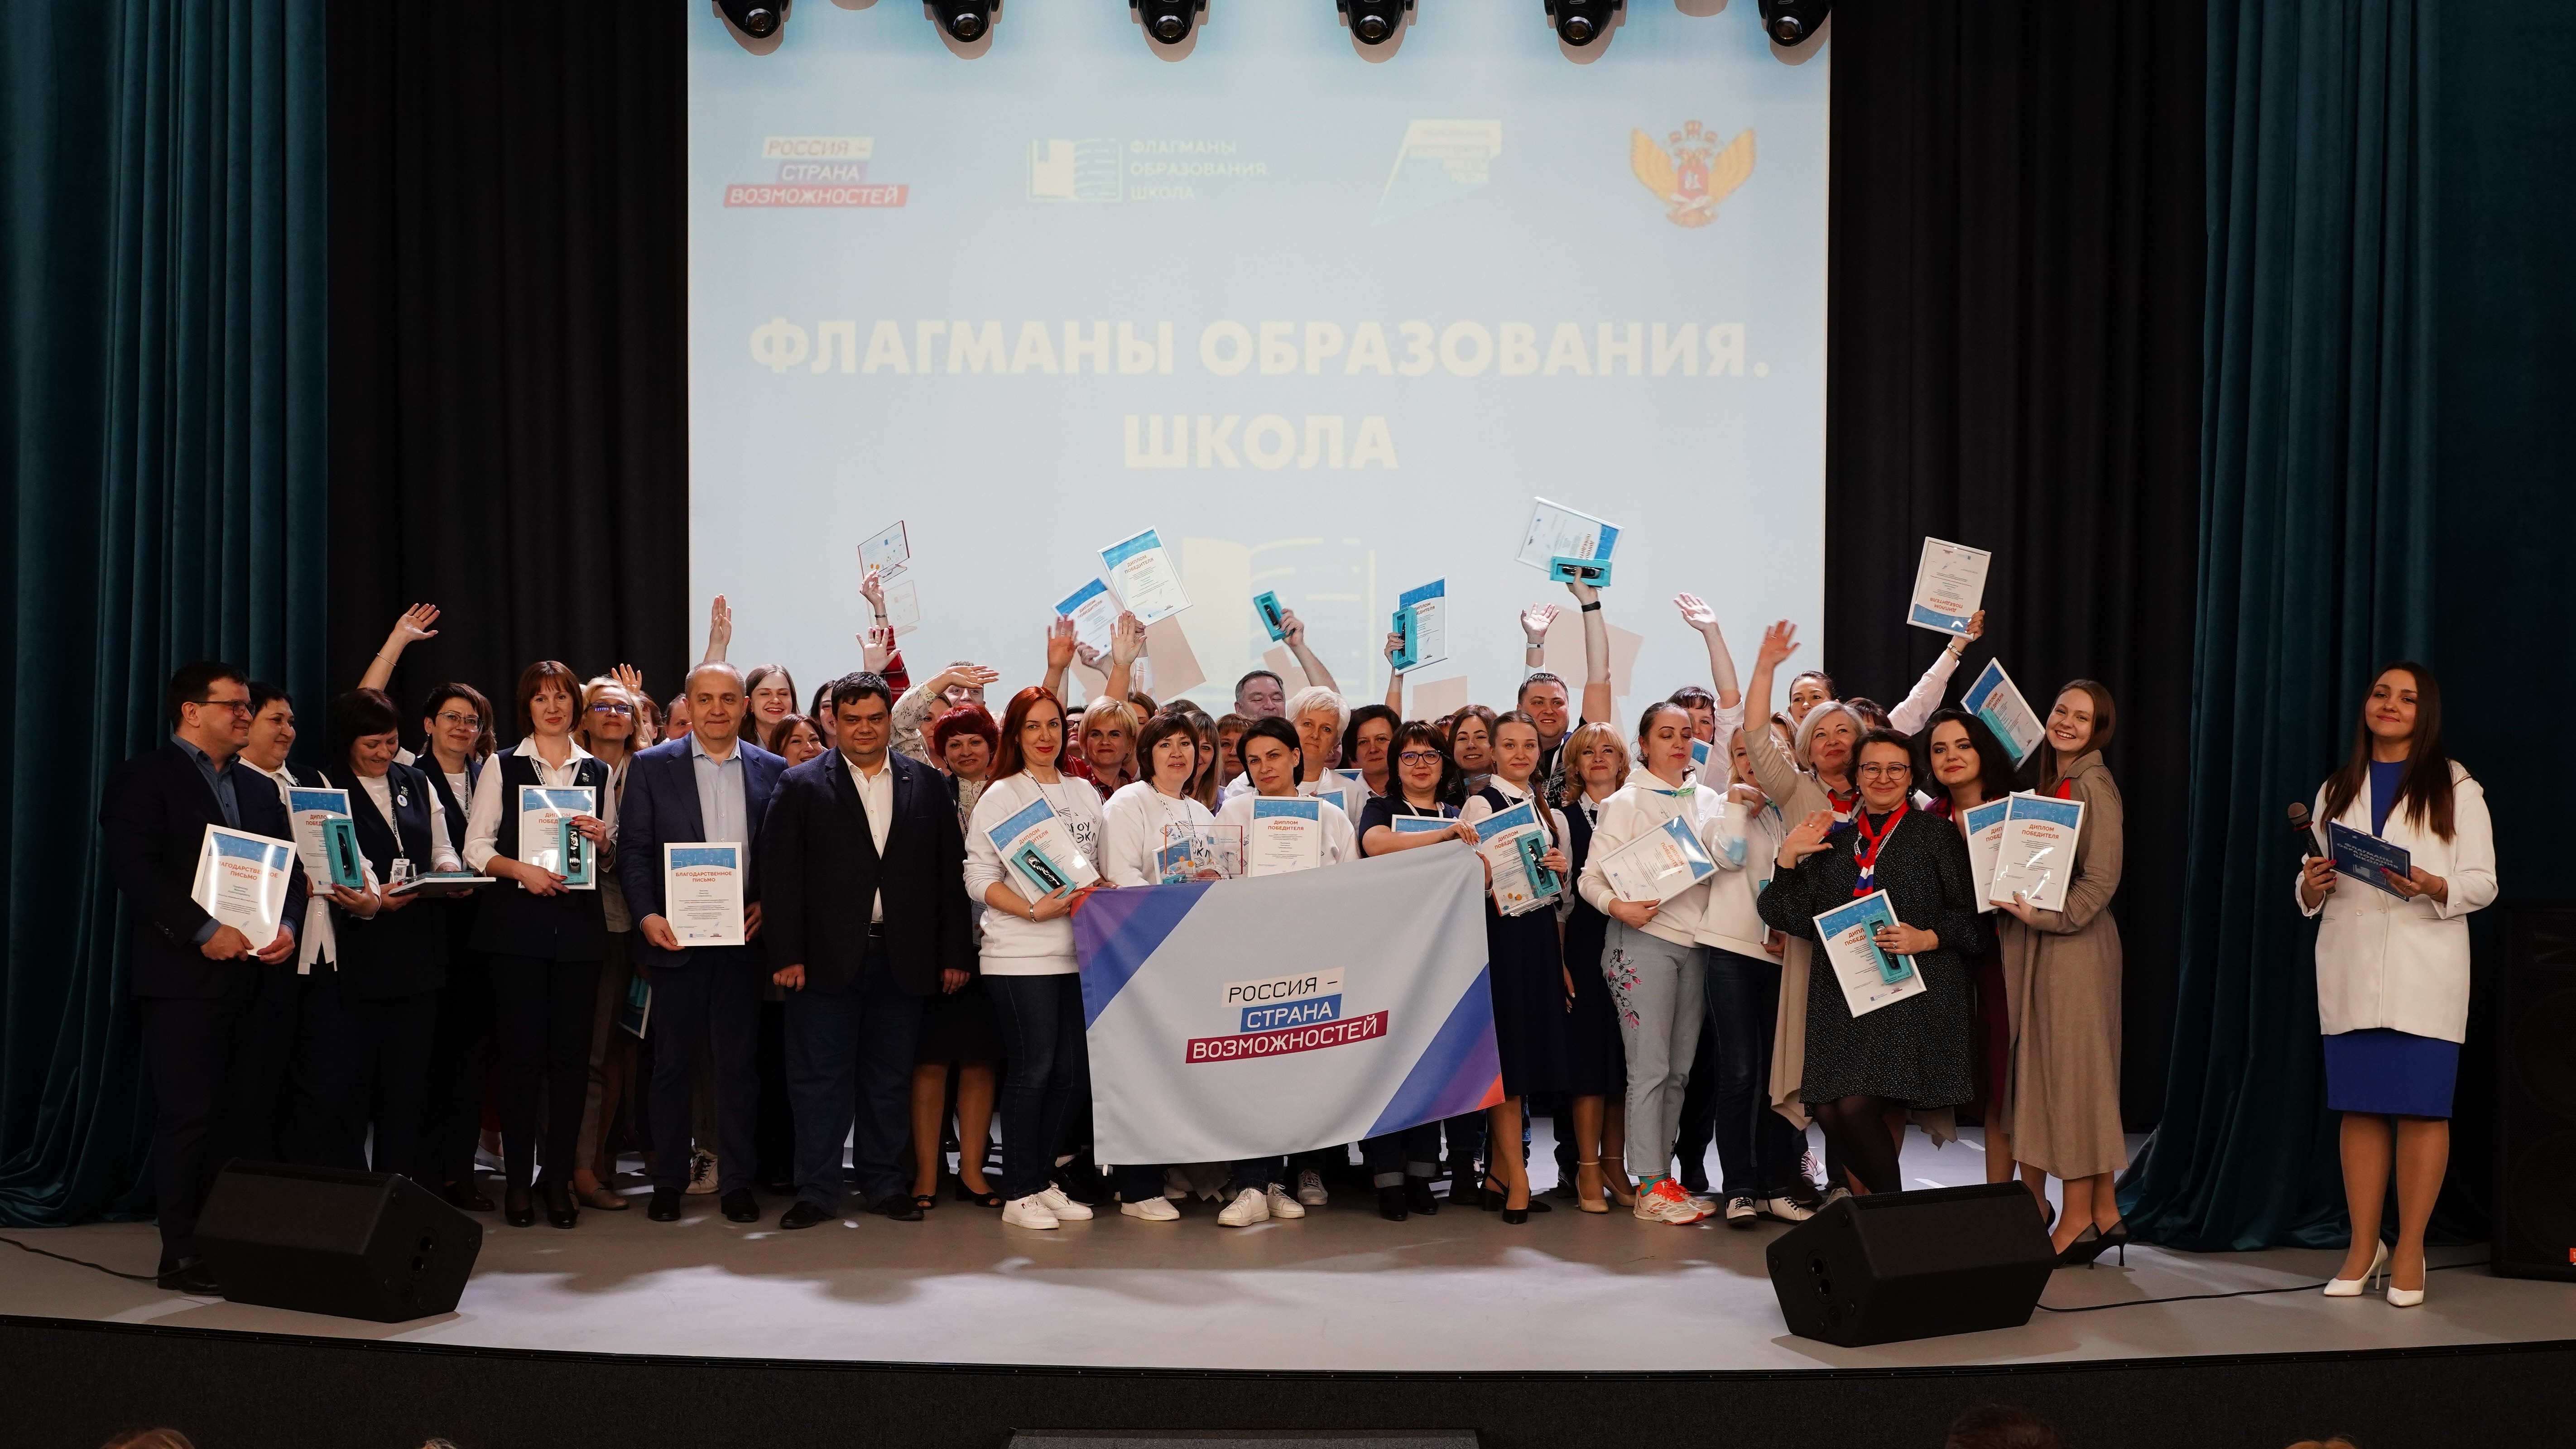 В Сибирском федеральном округе объявлены 13 команд – финалистов конкурса «Флагманы образования. Школа» 